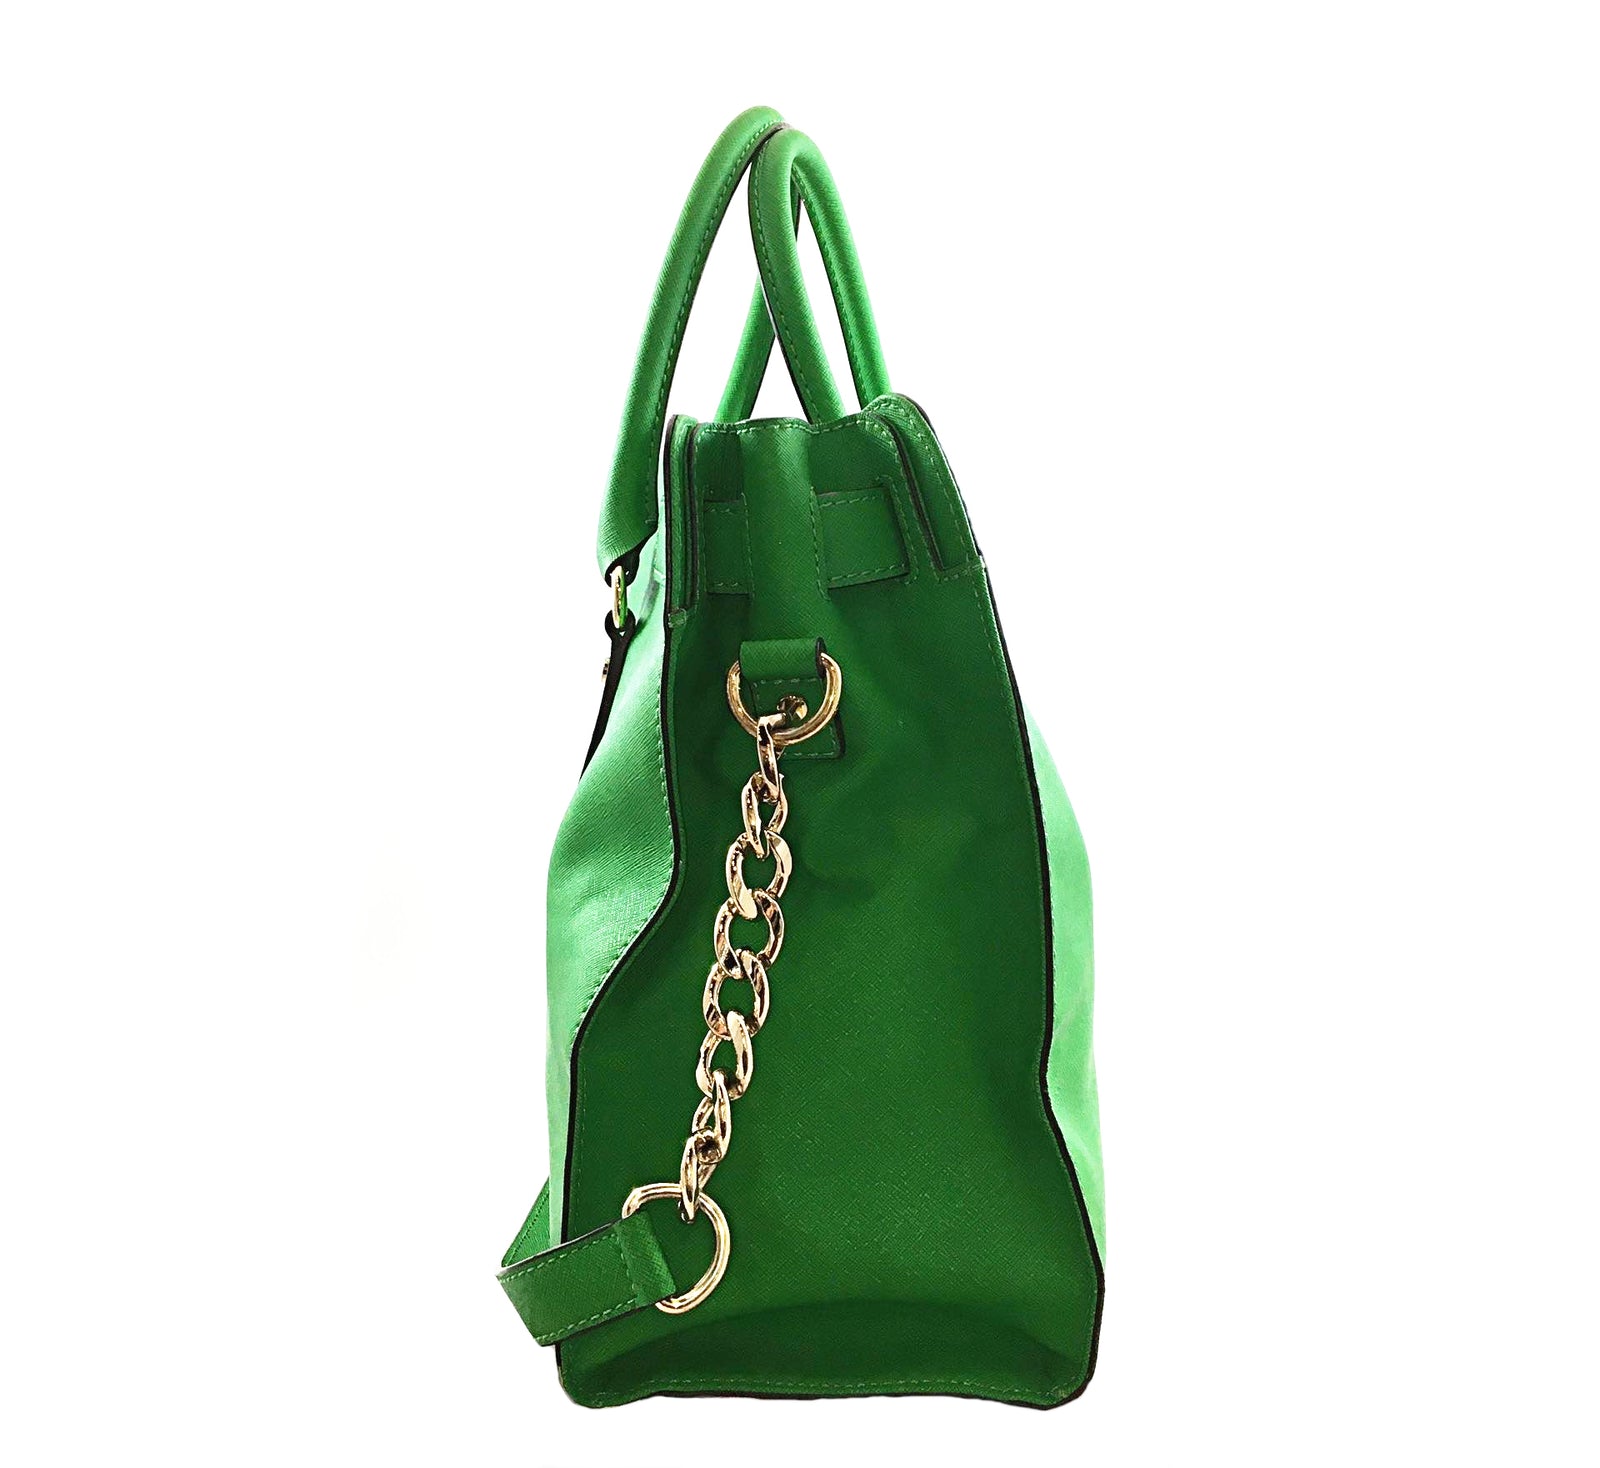 Green Hamilton Bag